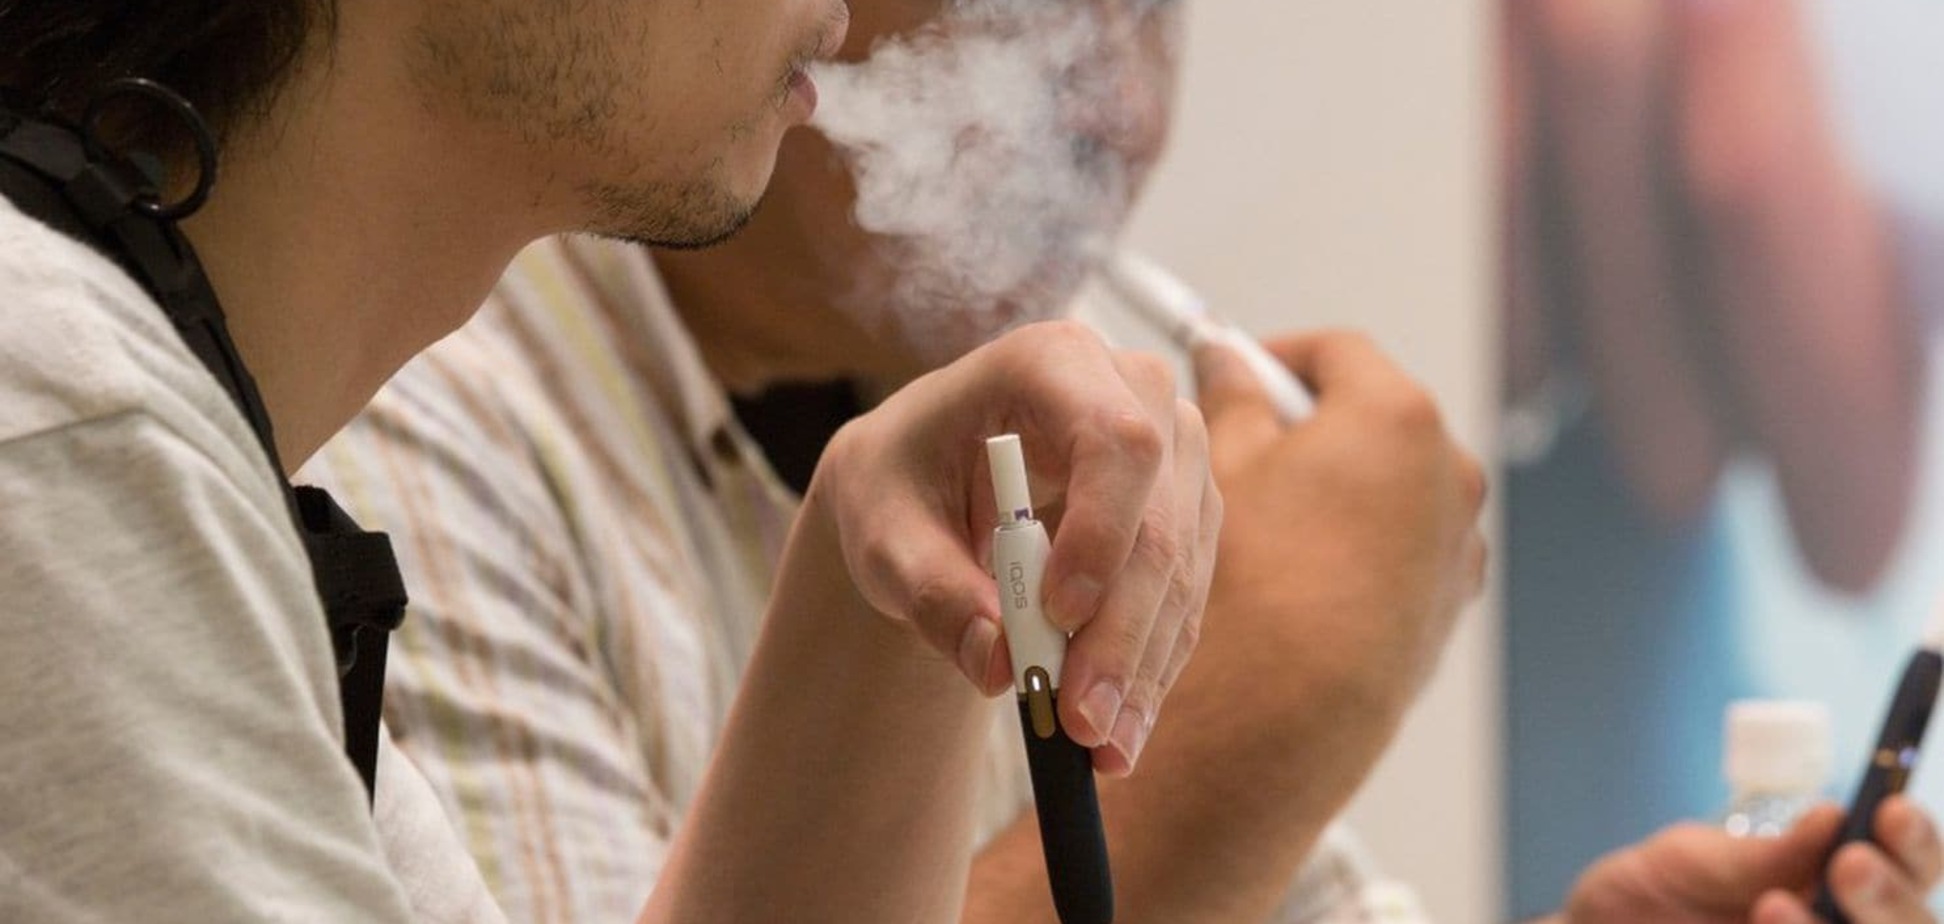 Система нагревания табака IQOS выделяет гораздо меньше вредных веществ, чем сигареты - эксперты